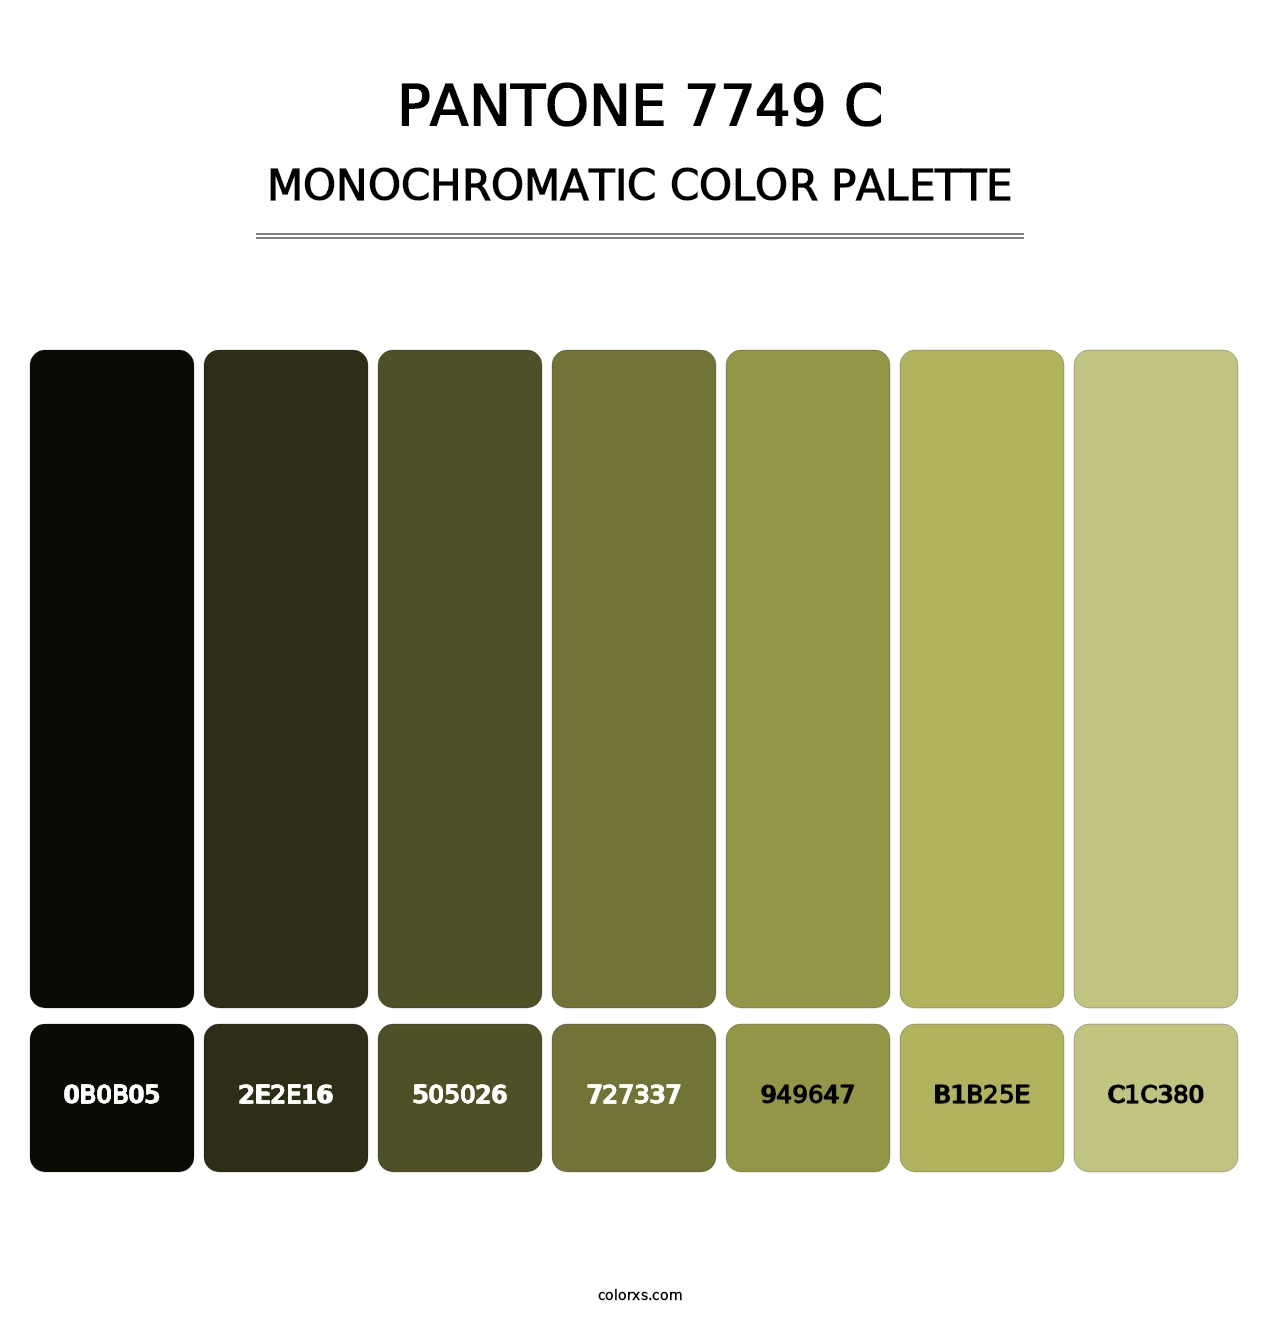 PANTONE 7749 C - Monochromatic Color Palette